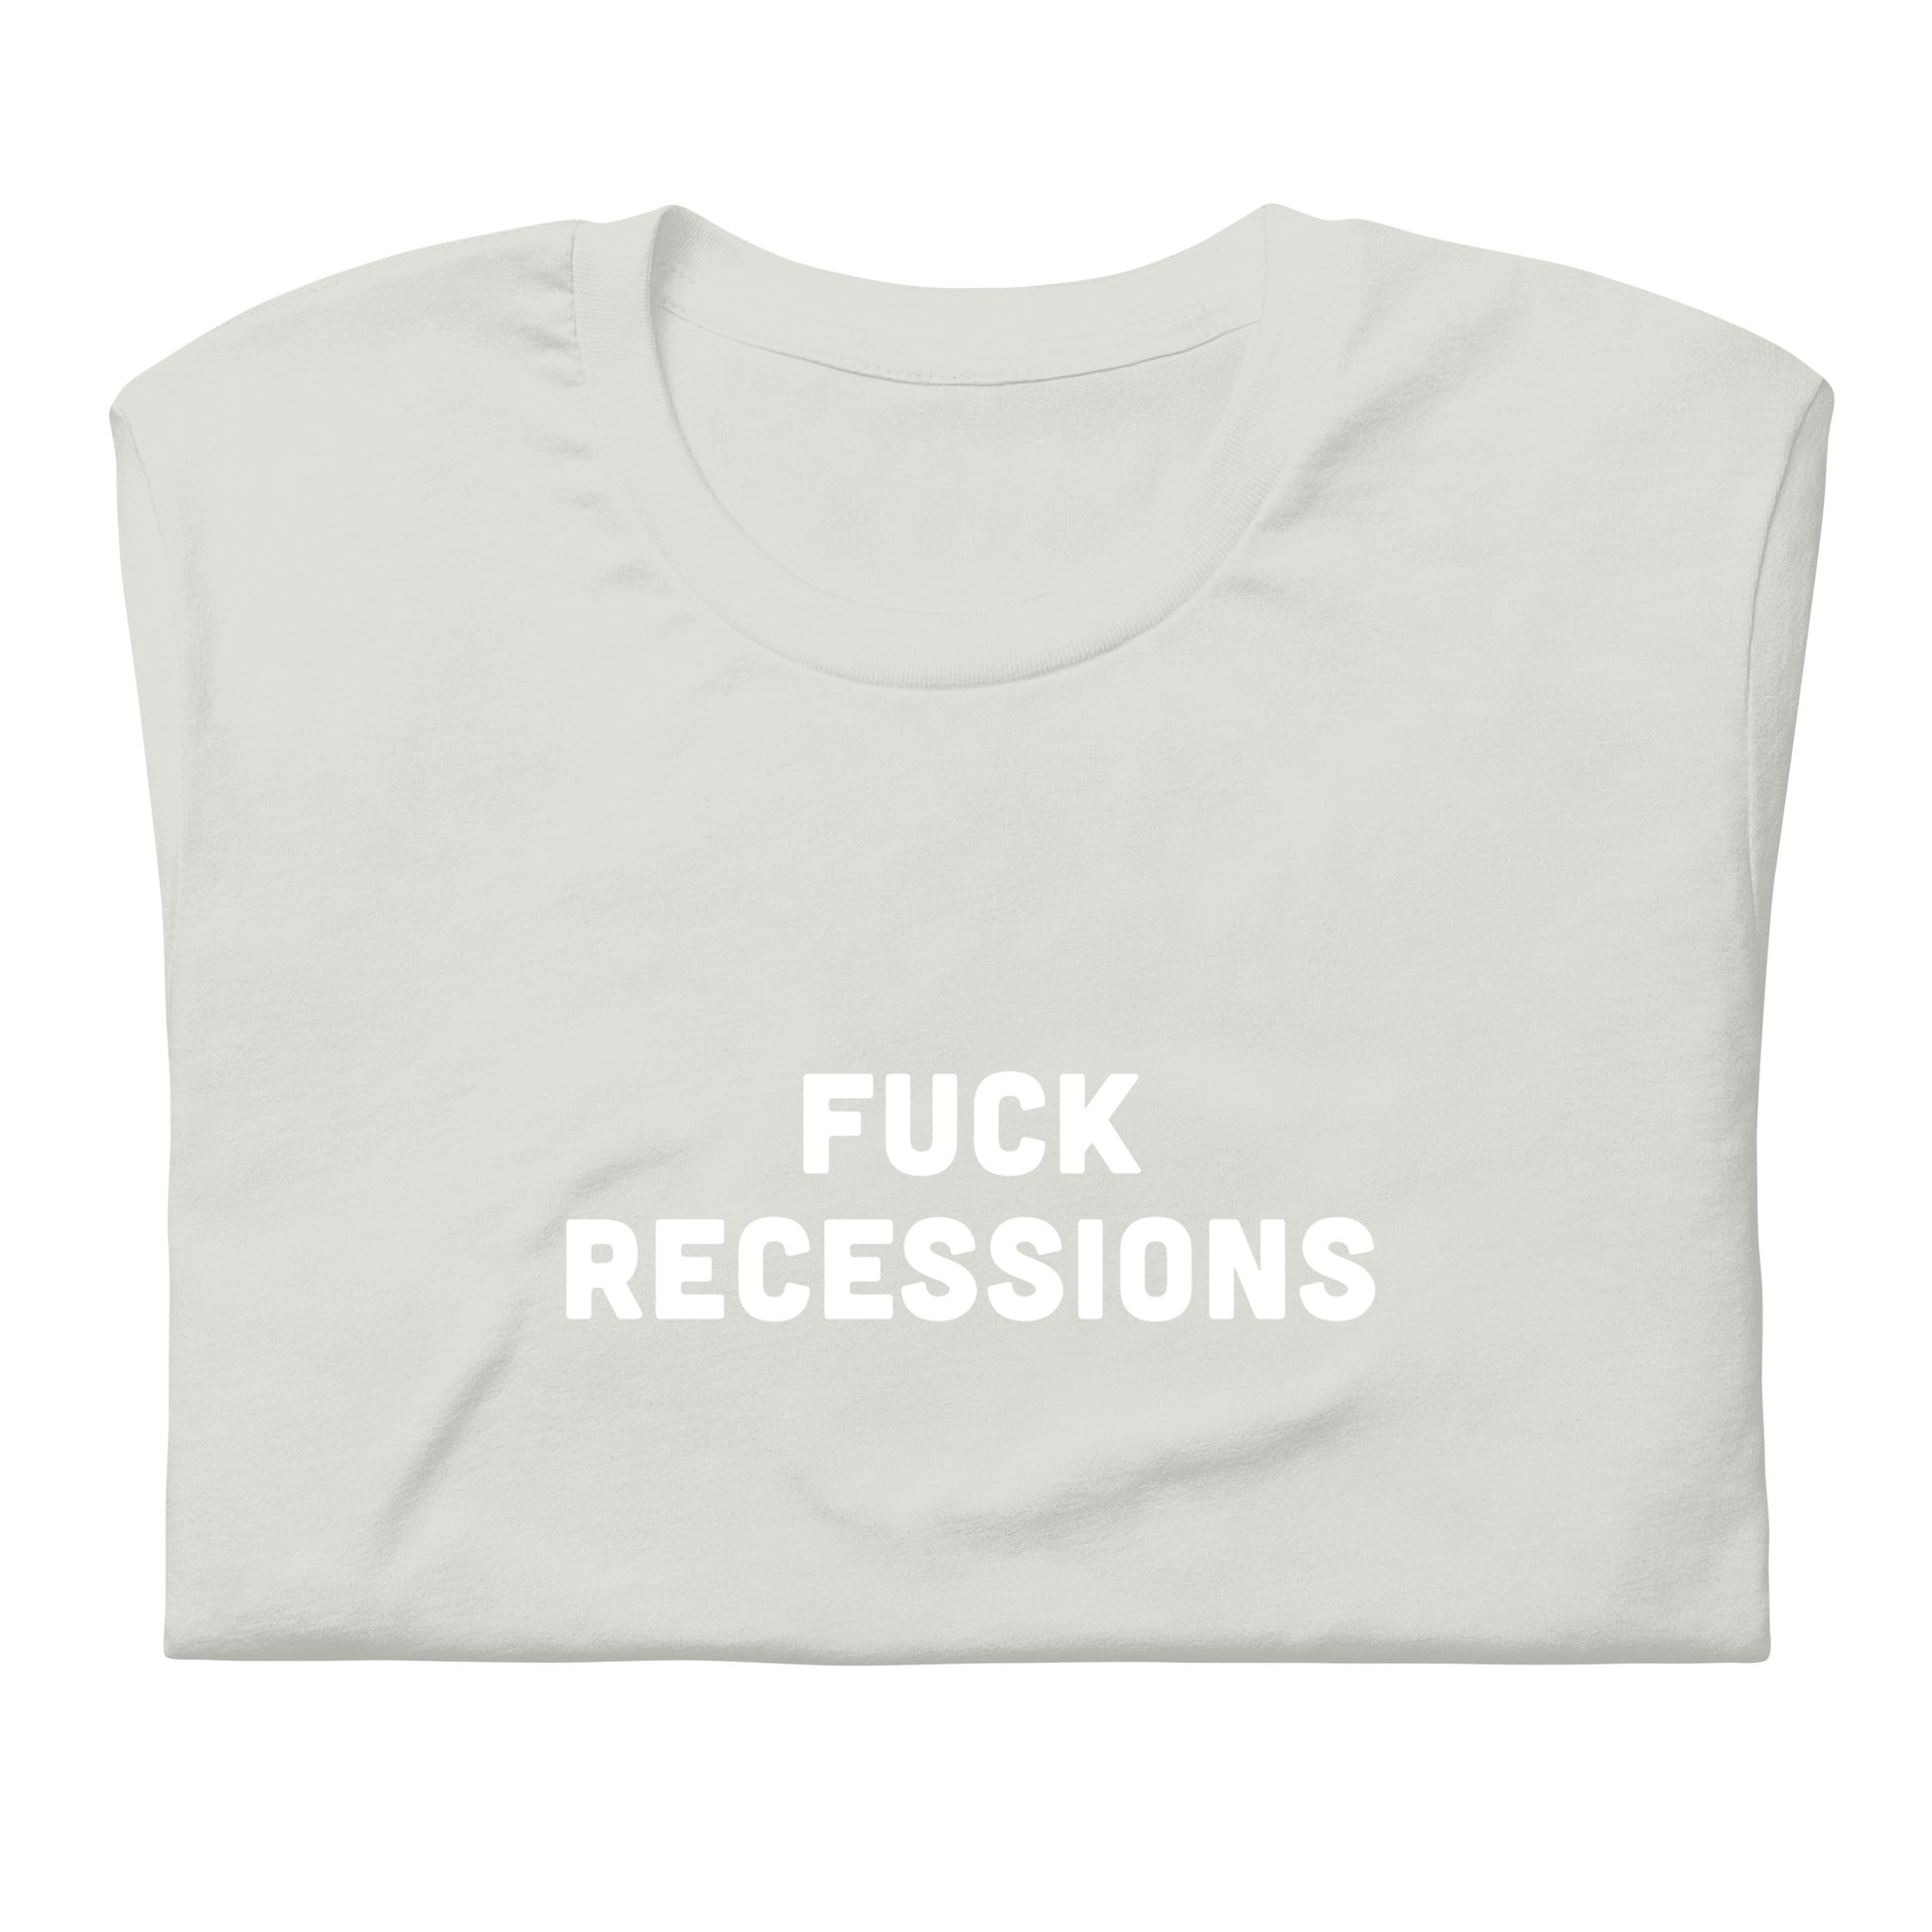 Fuck Recessions T-Shirt Size 2XL Color Asphalt